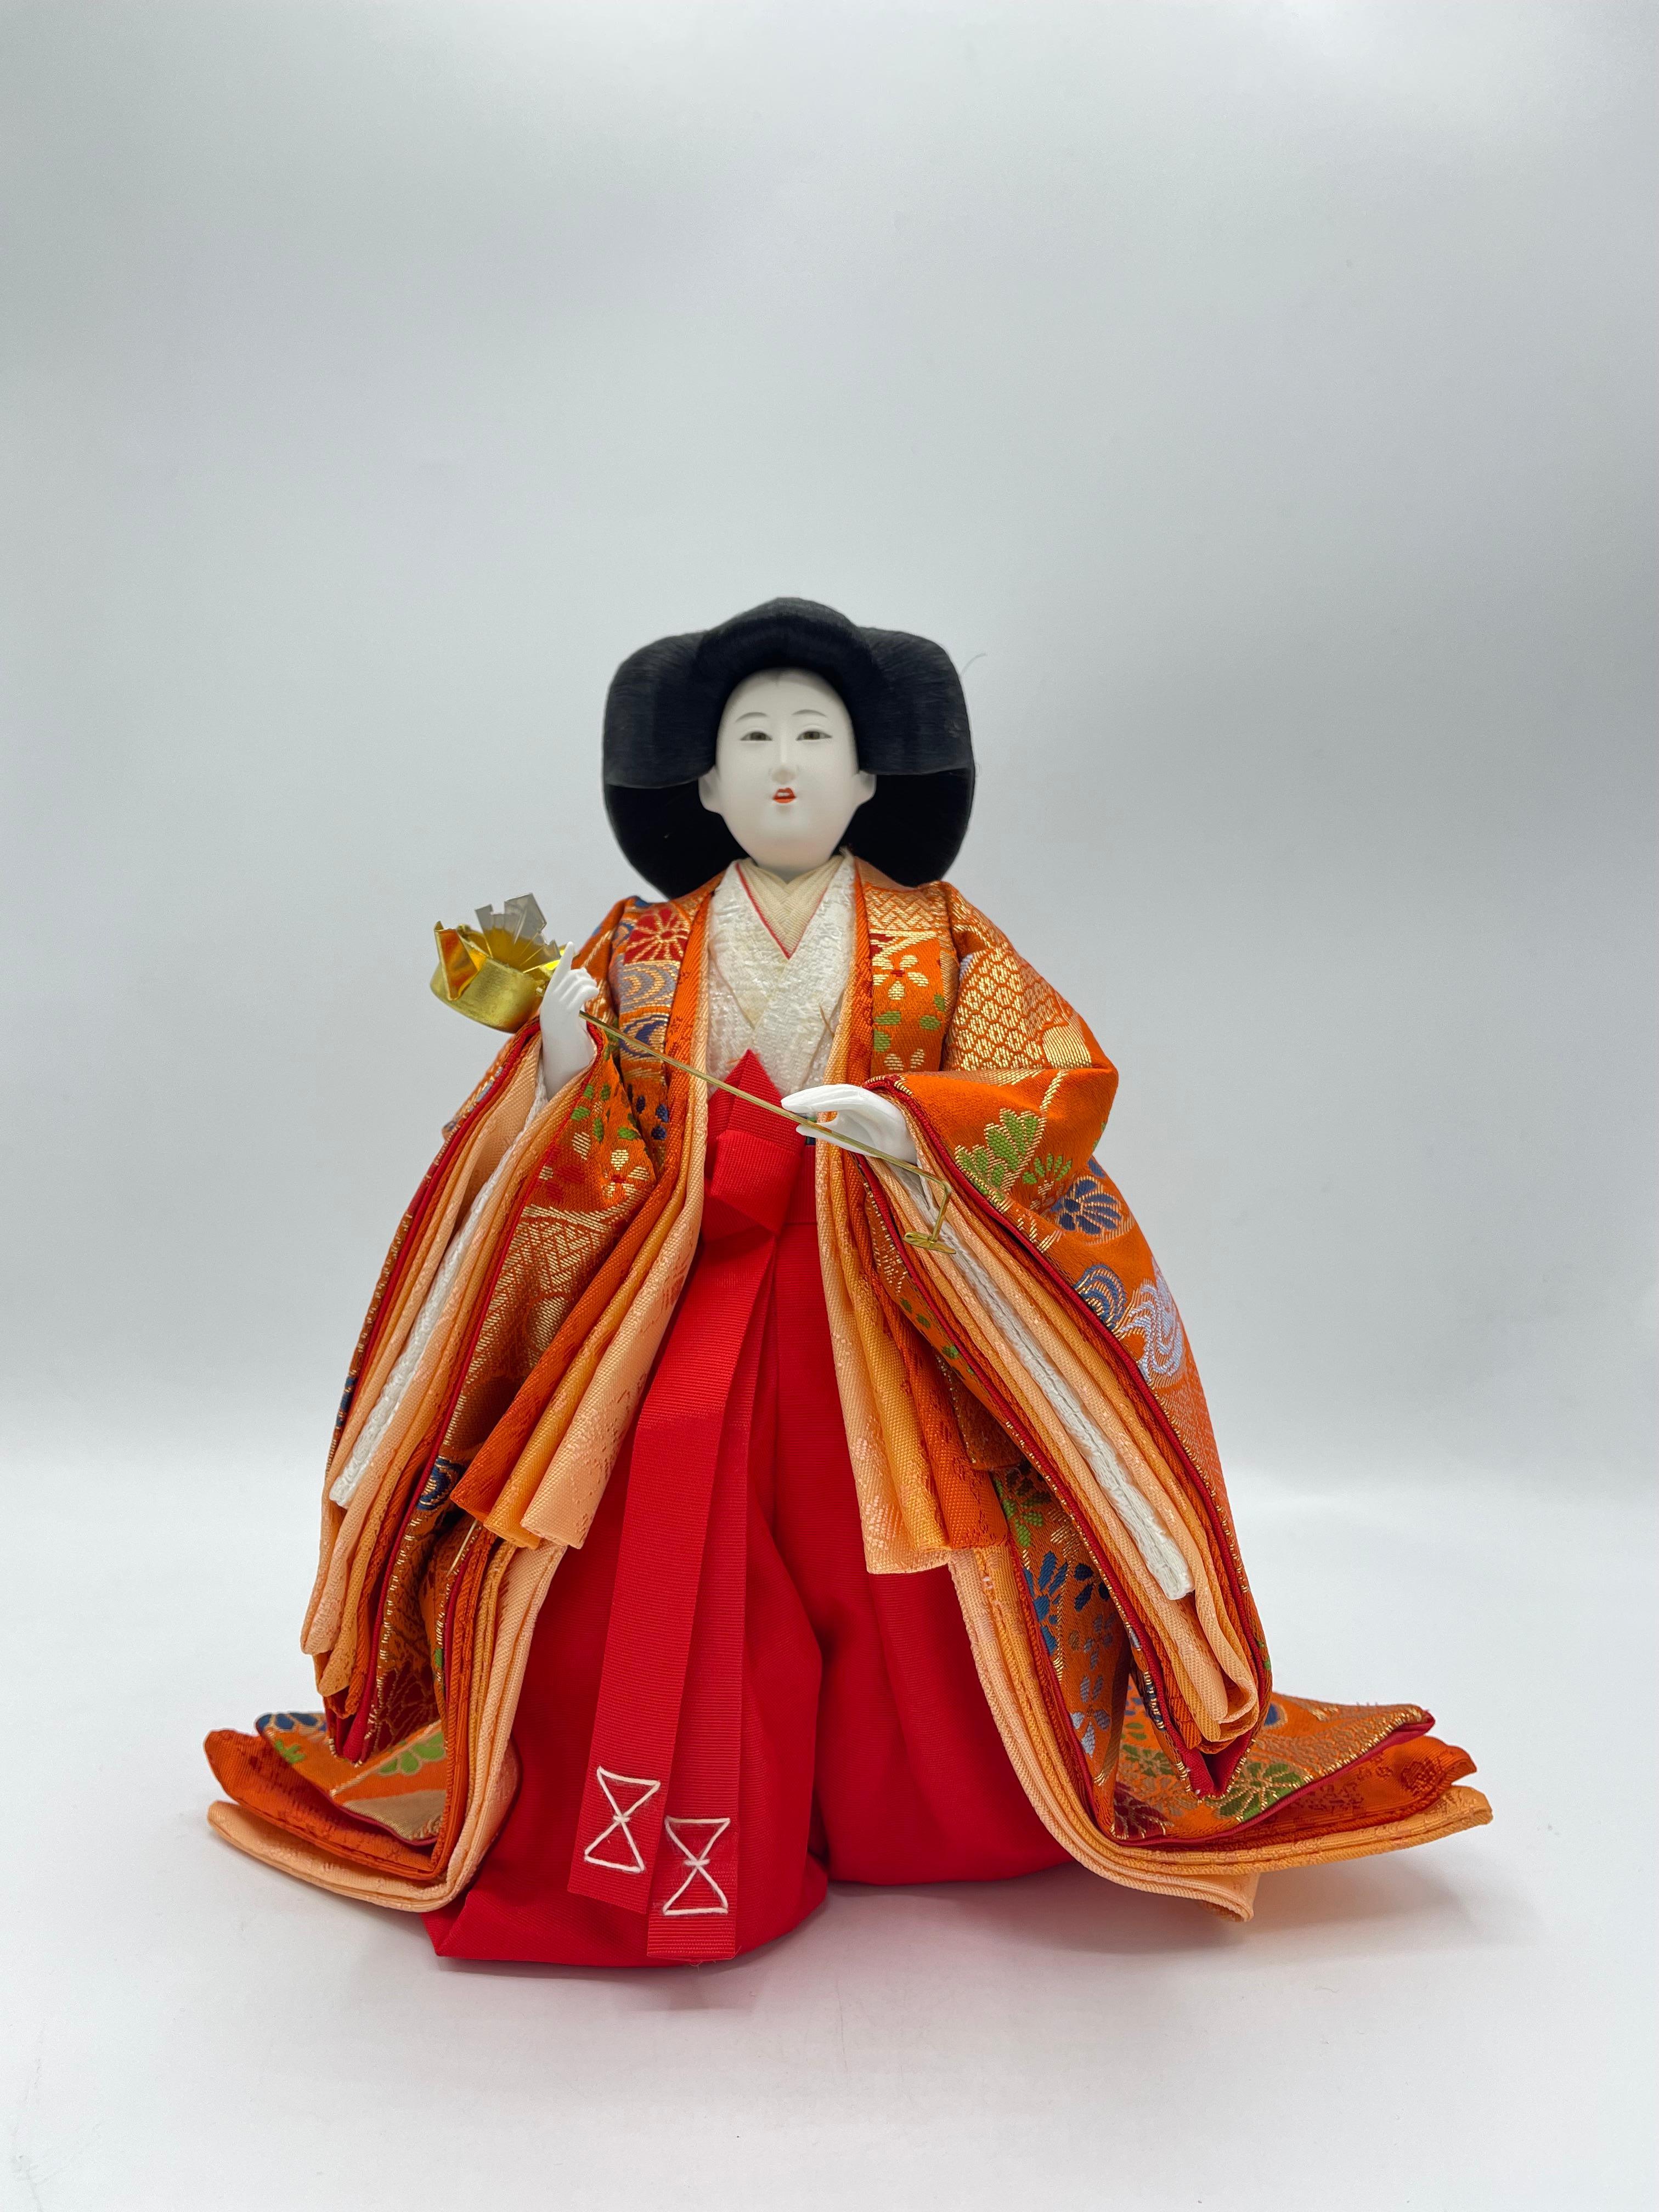 Dies ist eine Puppe, die wir für den Hinamatsuri-Tag verwenden. Diese Person ist einer der Sannin Kanjo.
Diese Person hat Nagae no choshi. Diese Puppe wurde aus Kunststoff, Baumwolle, Seide und Metall hergestellt. Diese Puppe wurde in den 1980er